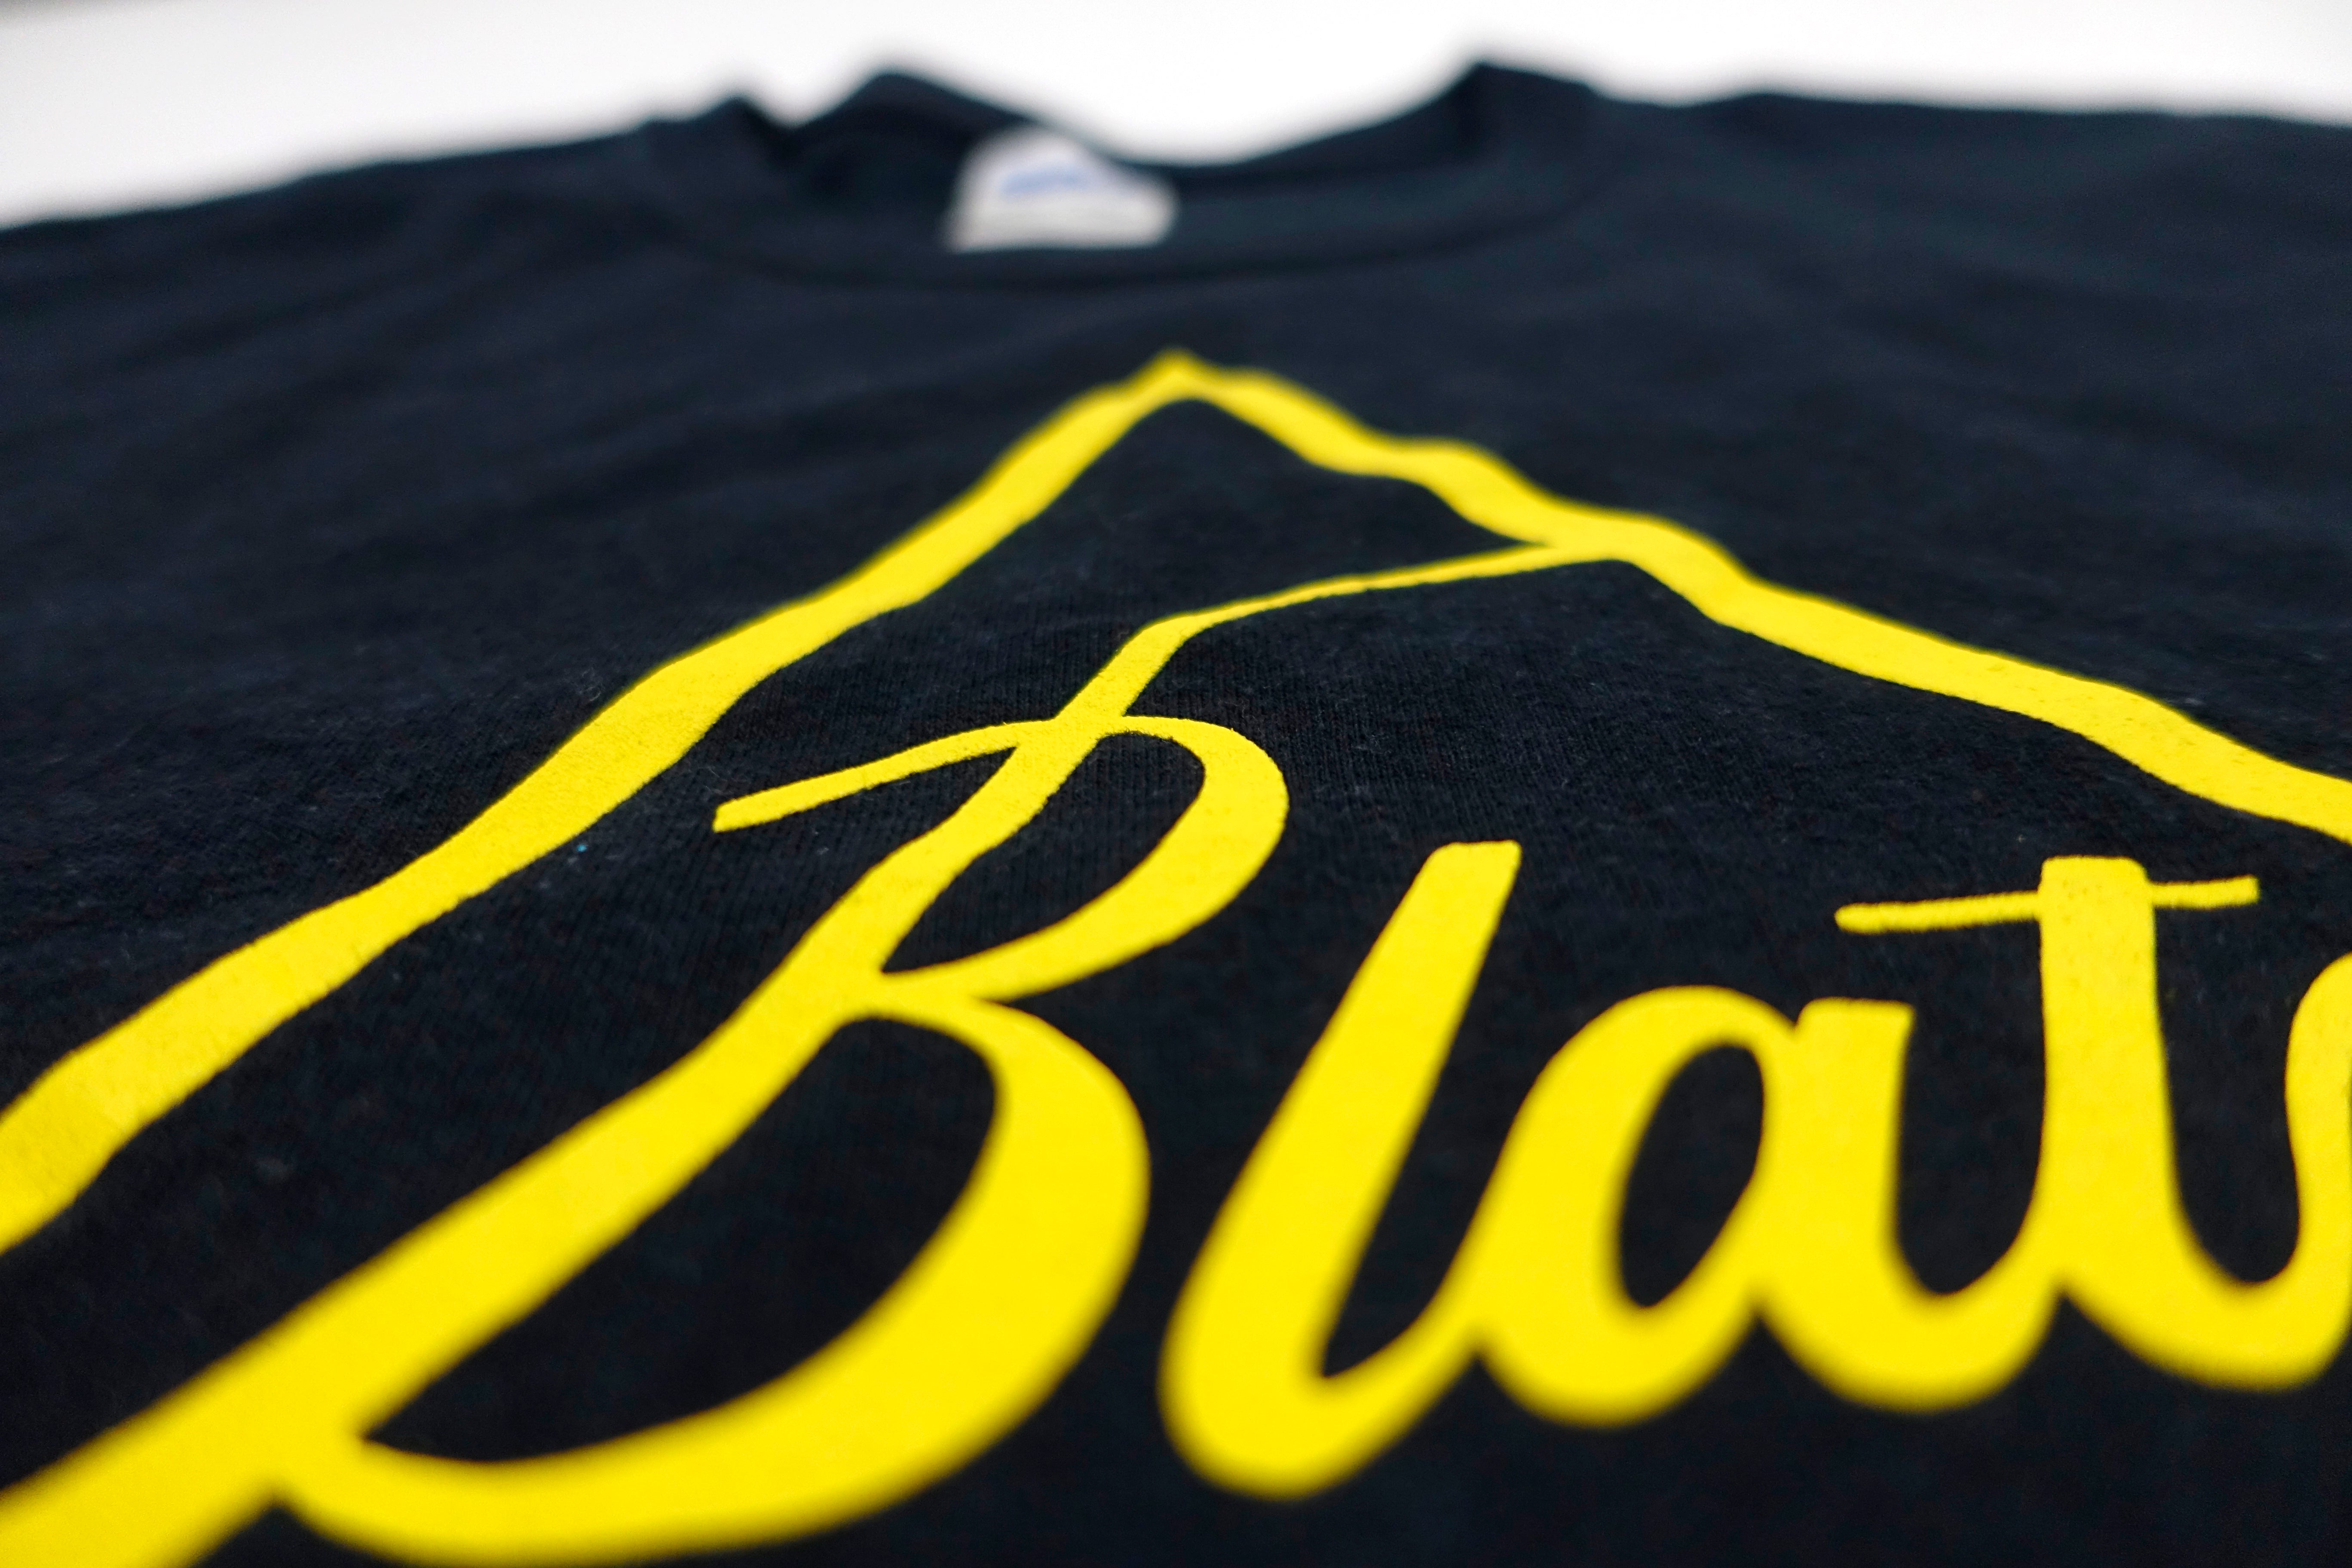 Blatz - Established East Bay 1989 Shirt Size Large